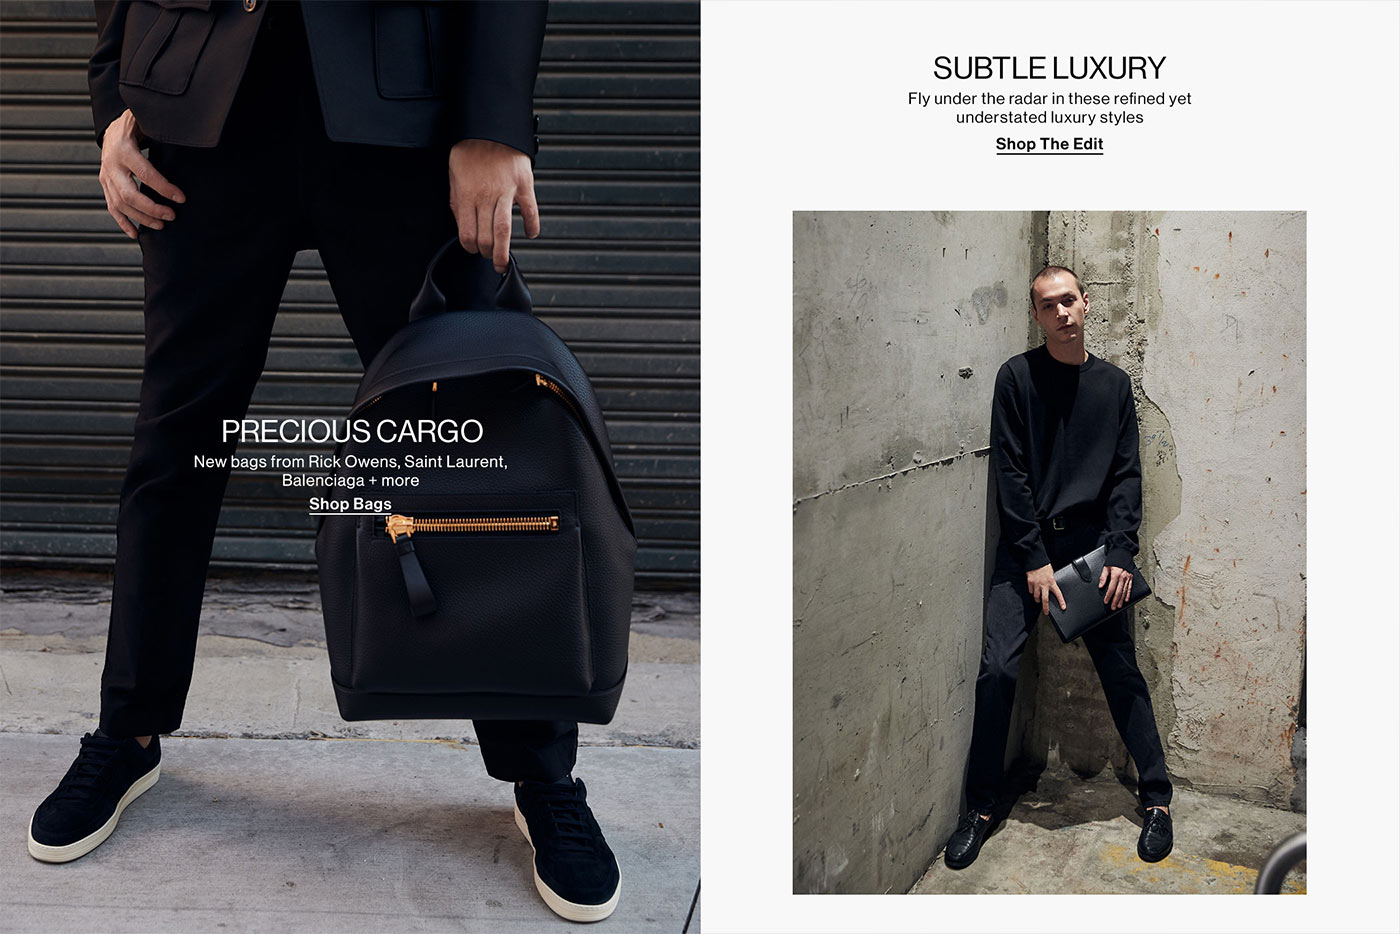 HED: Precious Cargo DEK: New bags from Rick Owens, Saint Laurent, Balenciaga + MORE CTA: SHOP BAGS